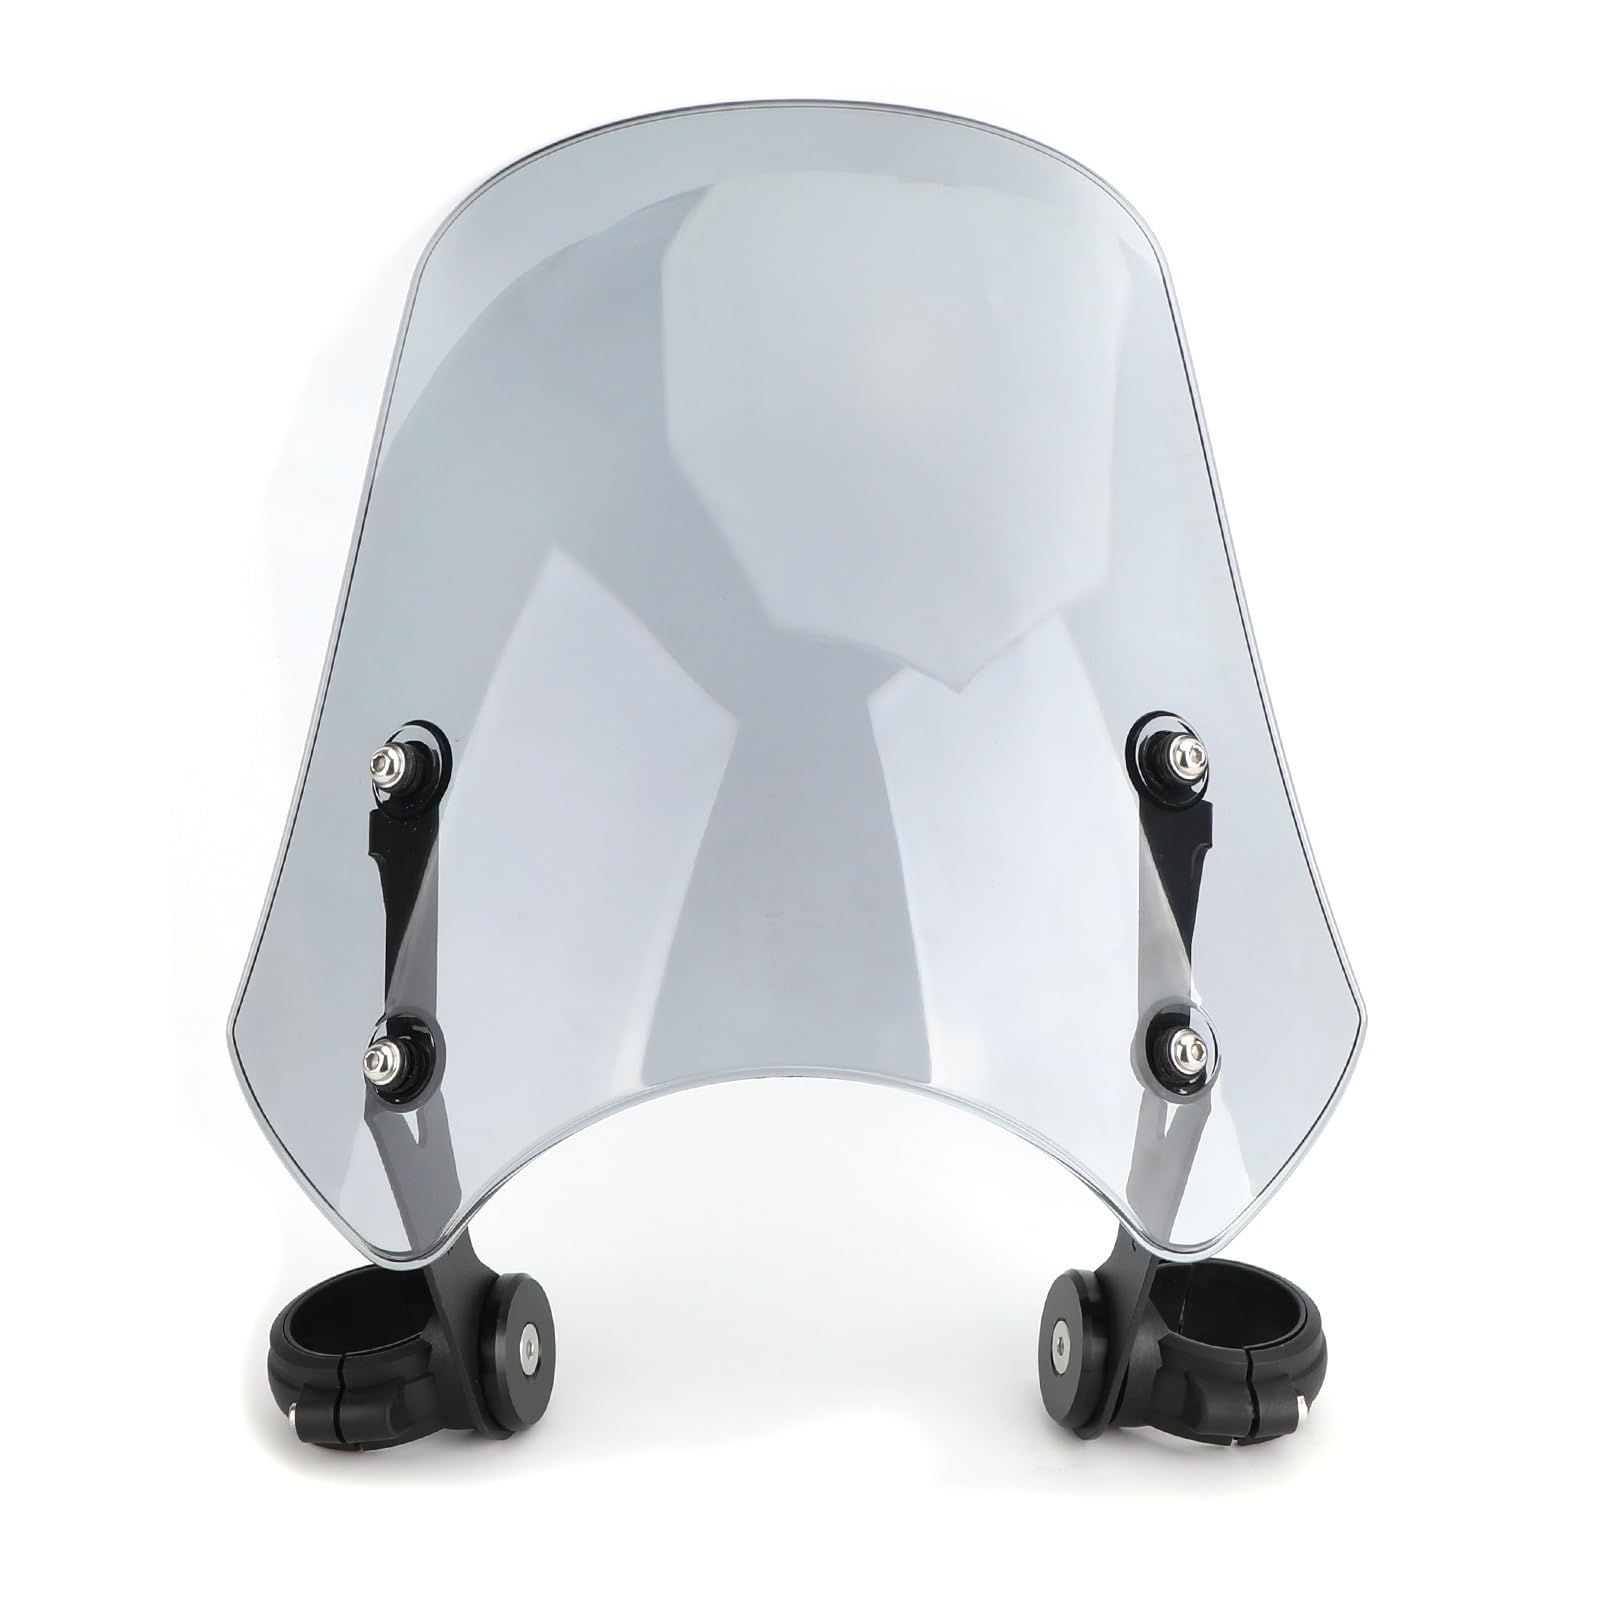 Windschutzscheibe Motorrad-Windschutzscheibe für Ha&rley Dyna Softail-Modelle von GANGEV